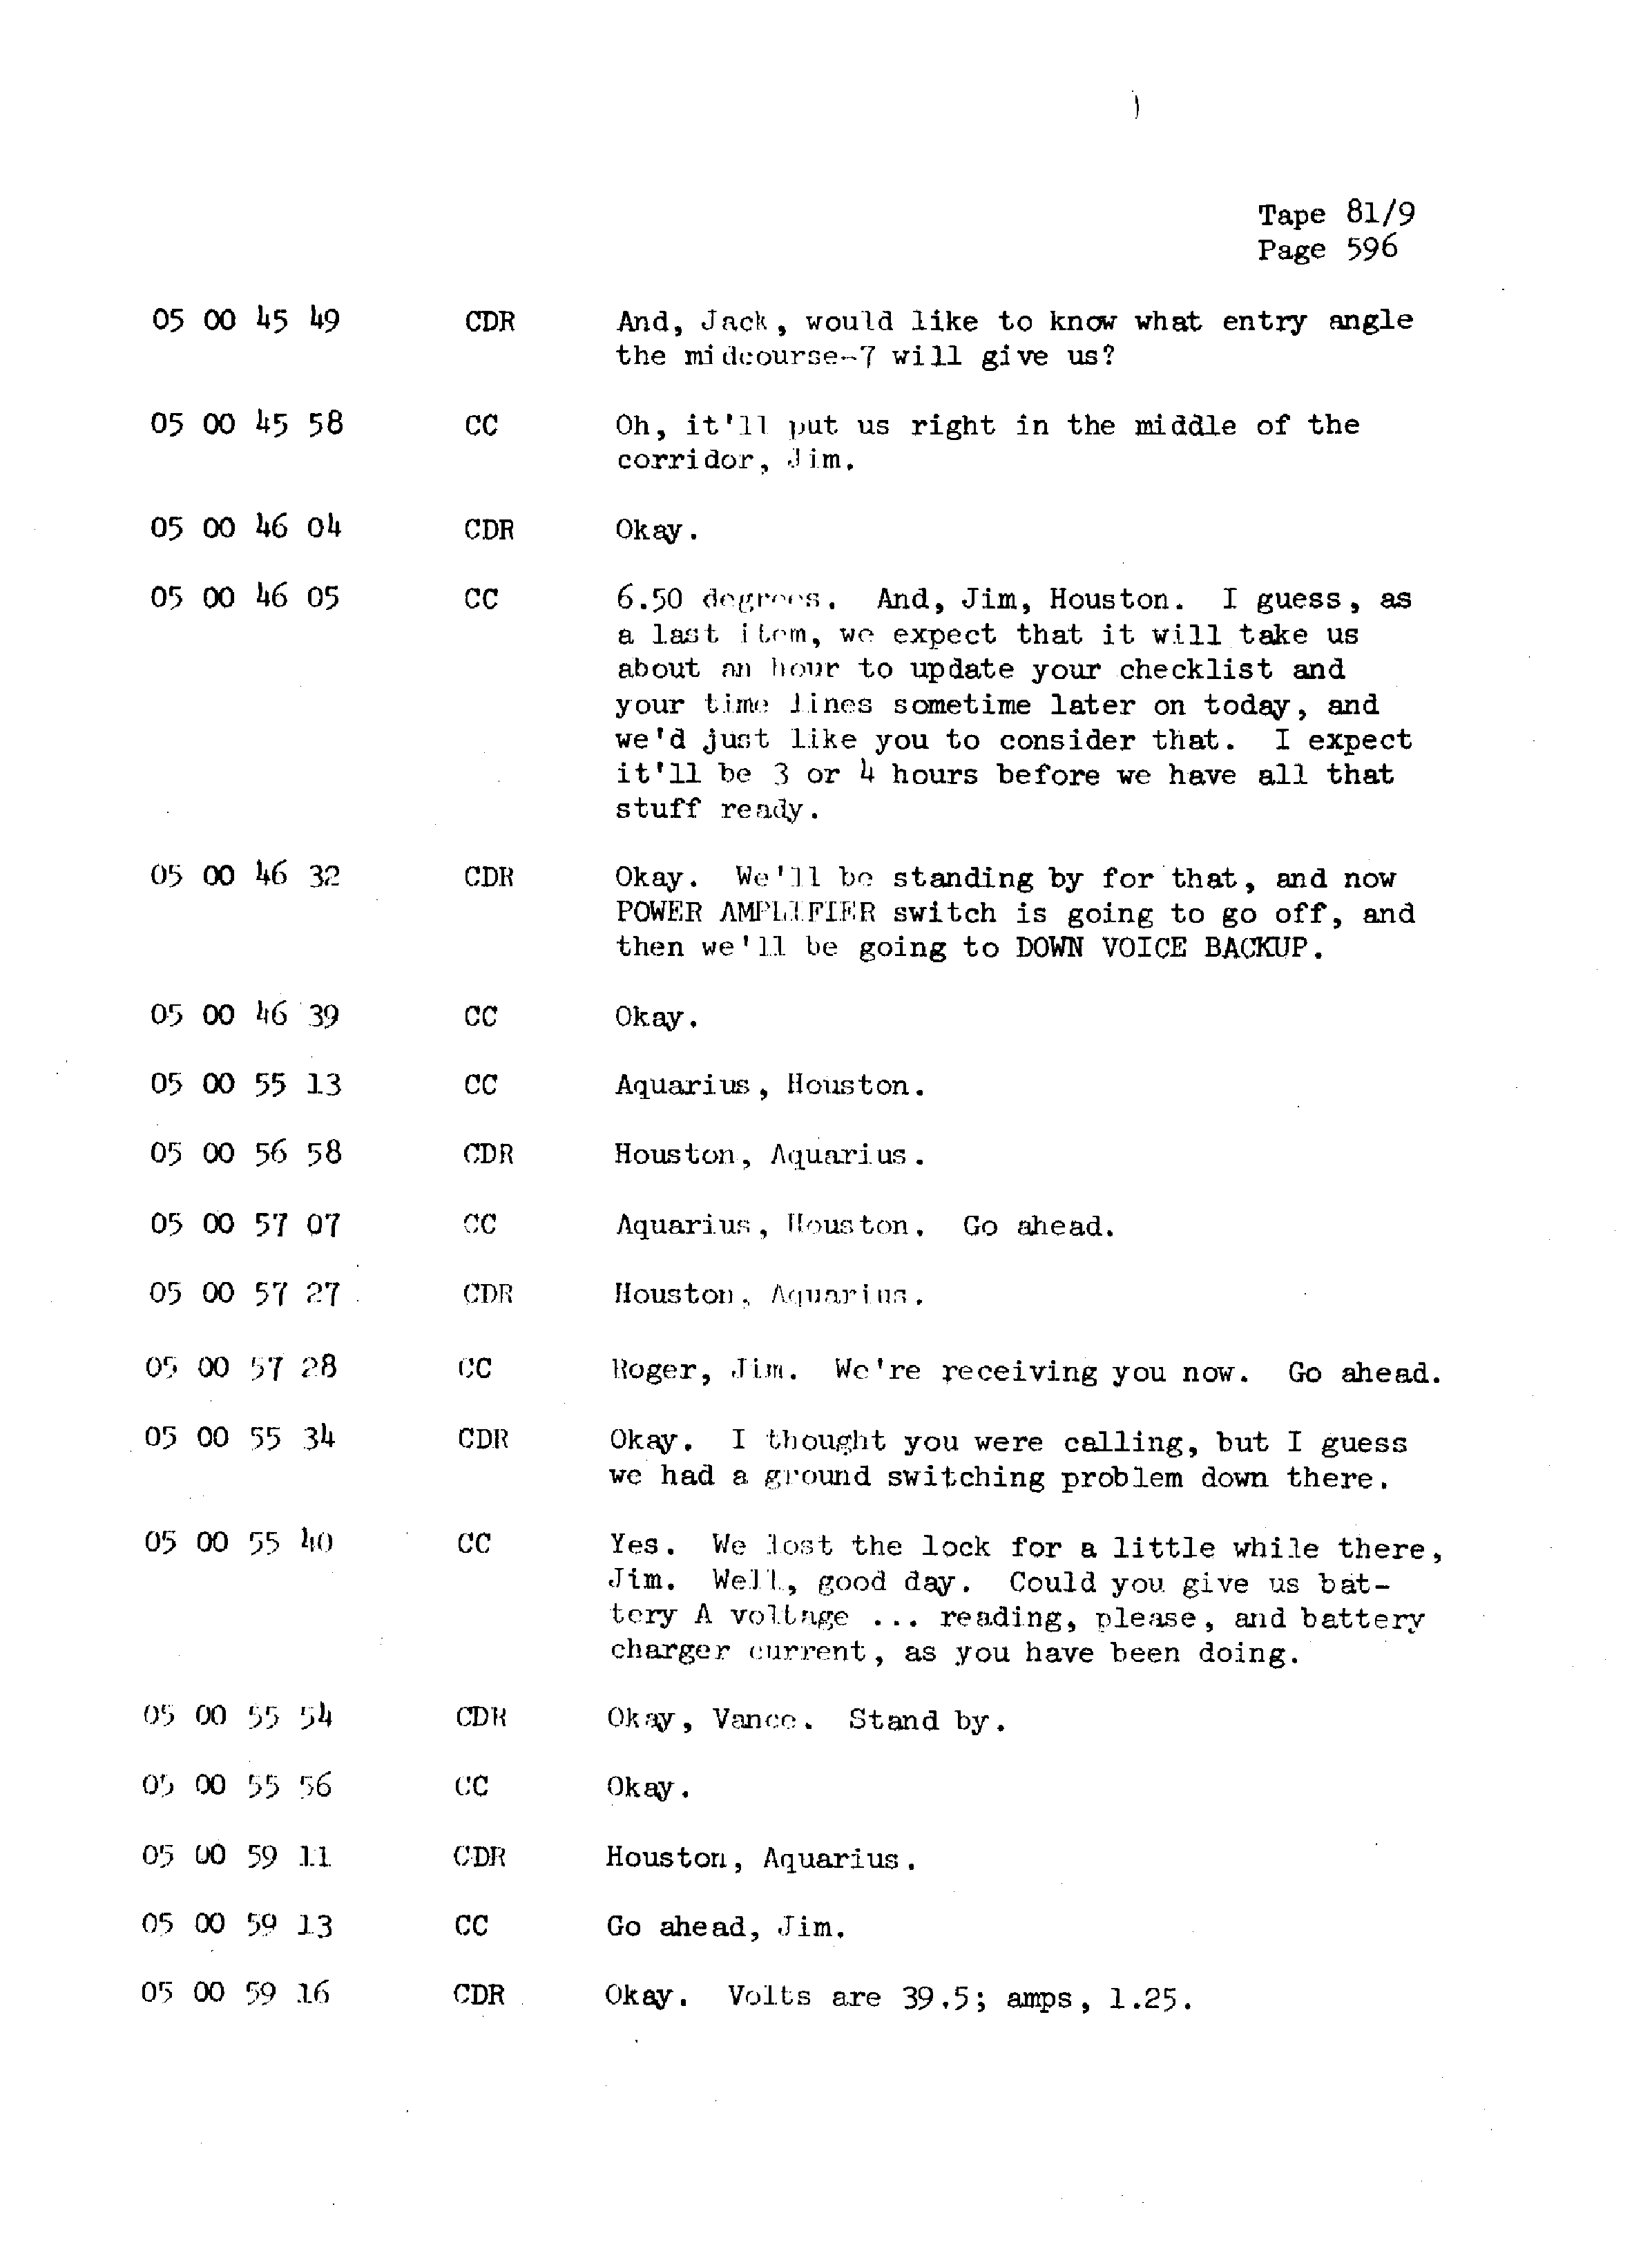 Page 603 of Apollo 13’s original transcript